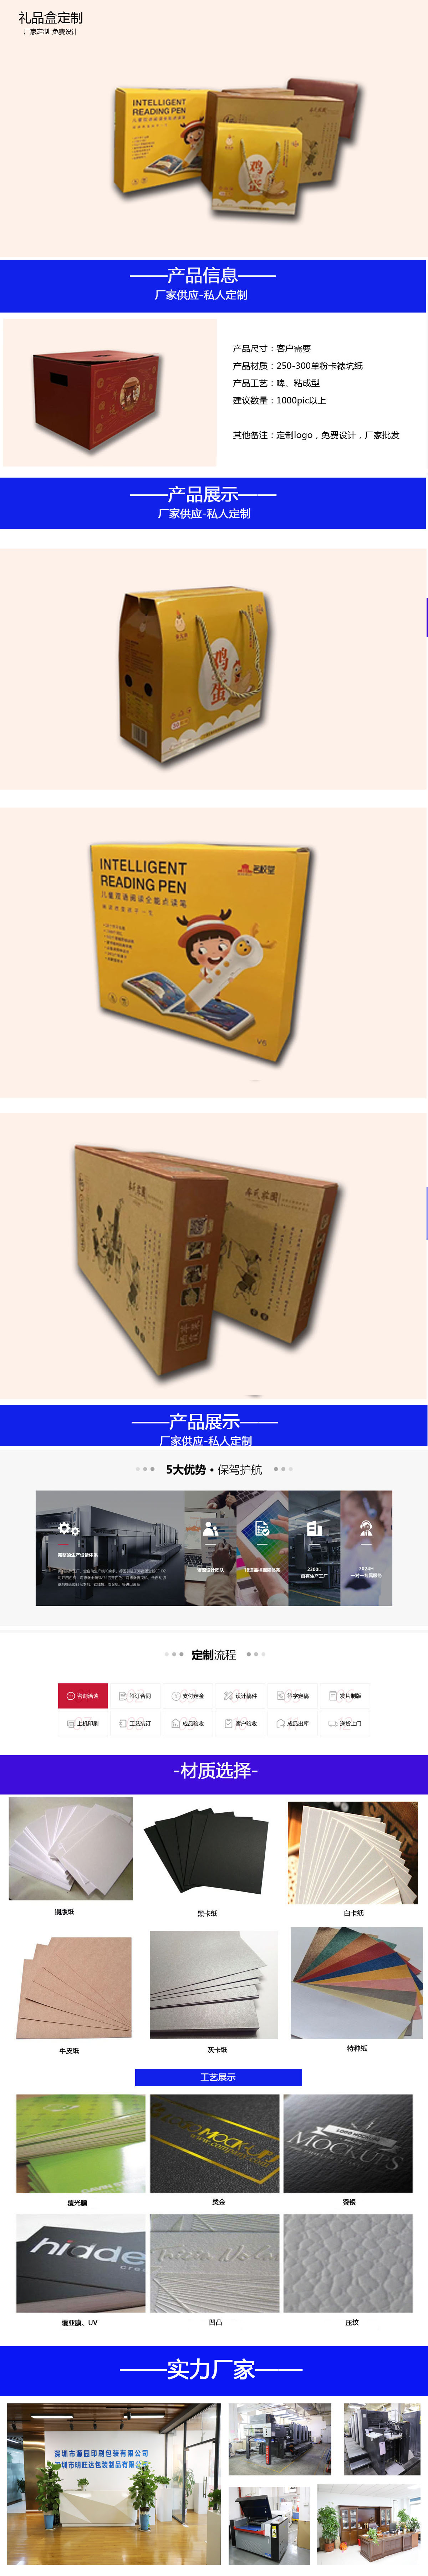 包装盒1.jpg